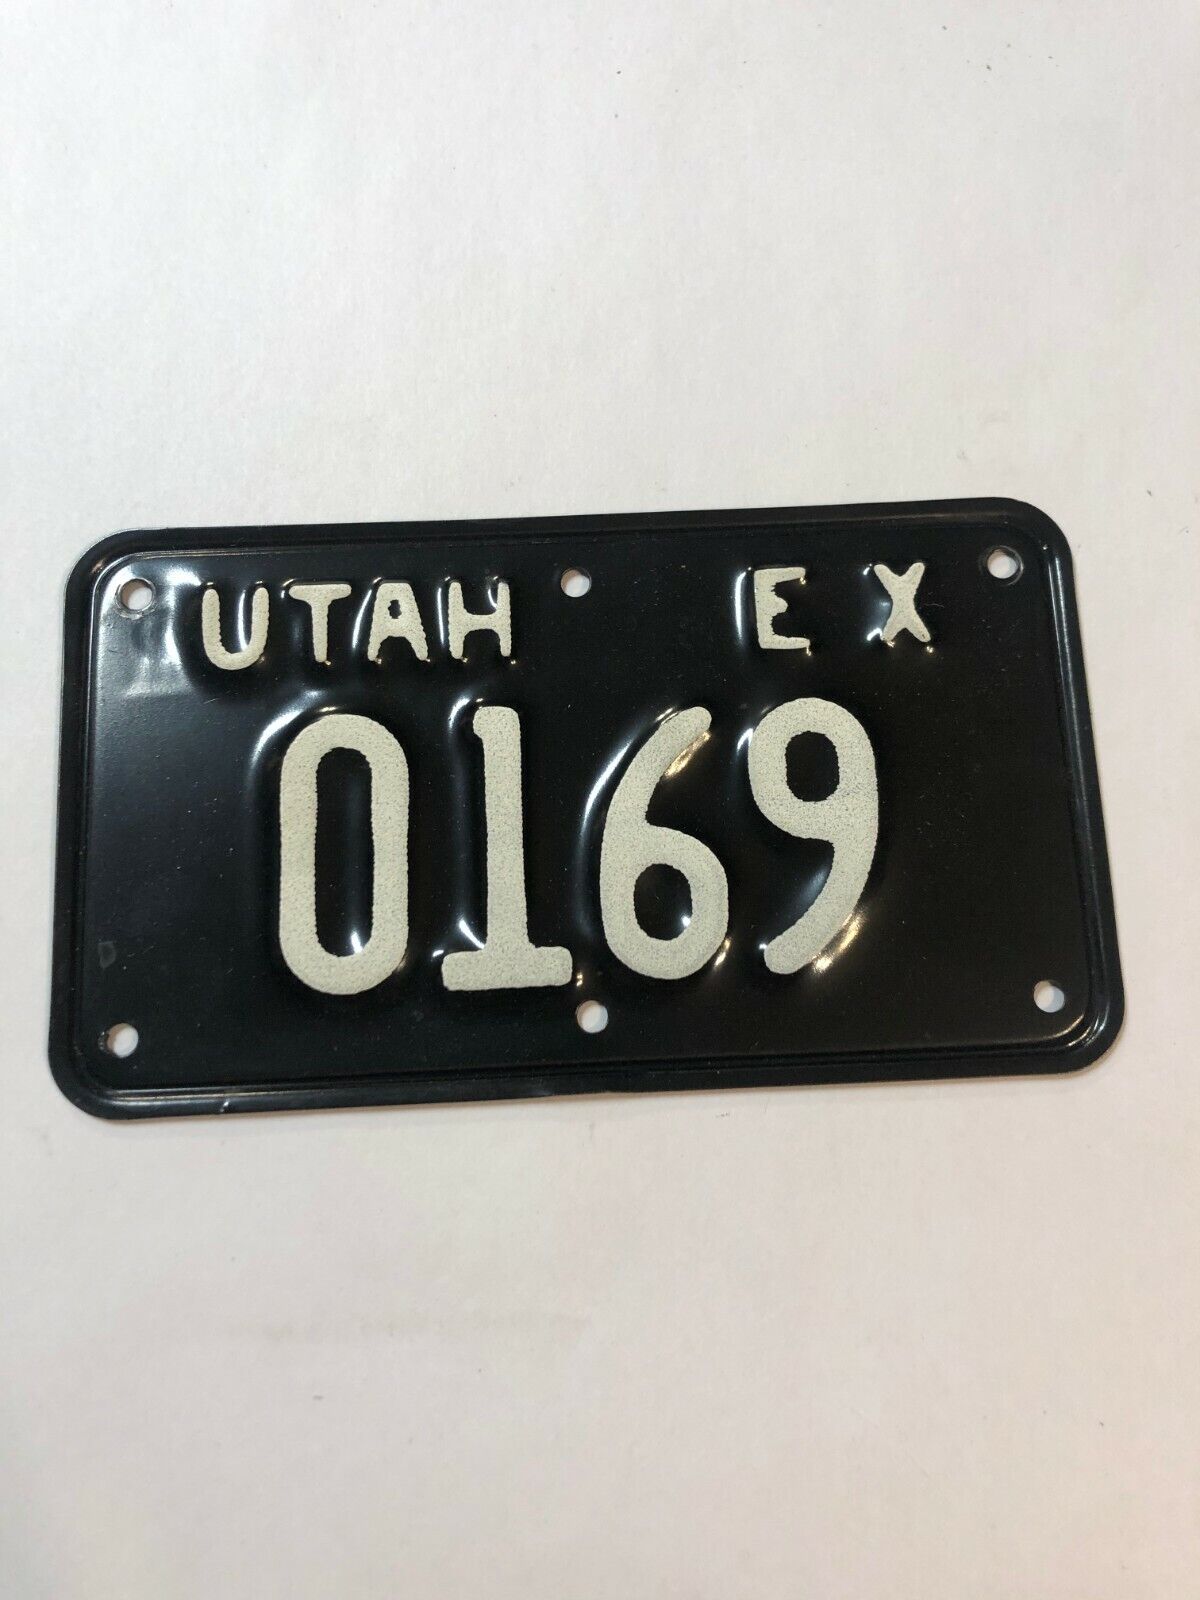 1968 1971 1969 1972 Utah Highway Patrol Exempt Motorcycle License Plate 0169 EX